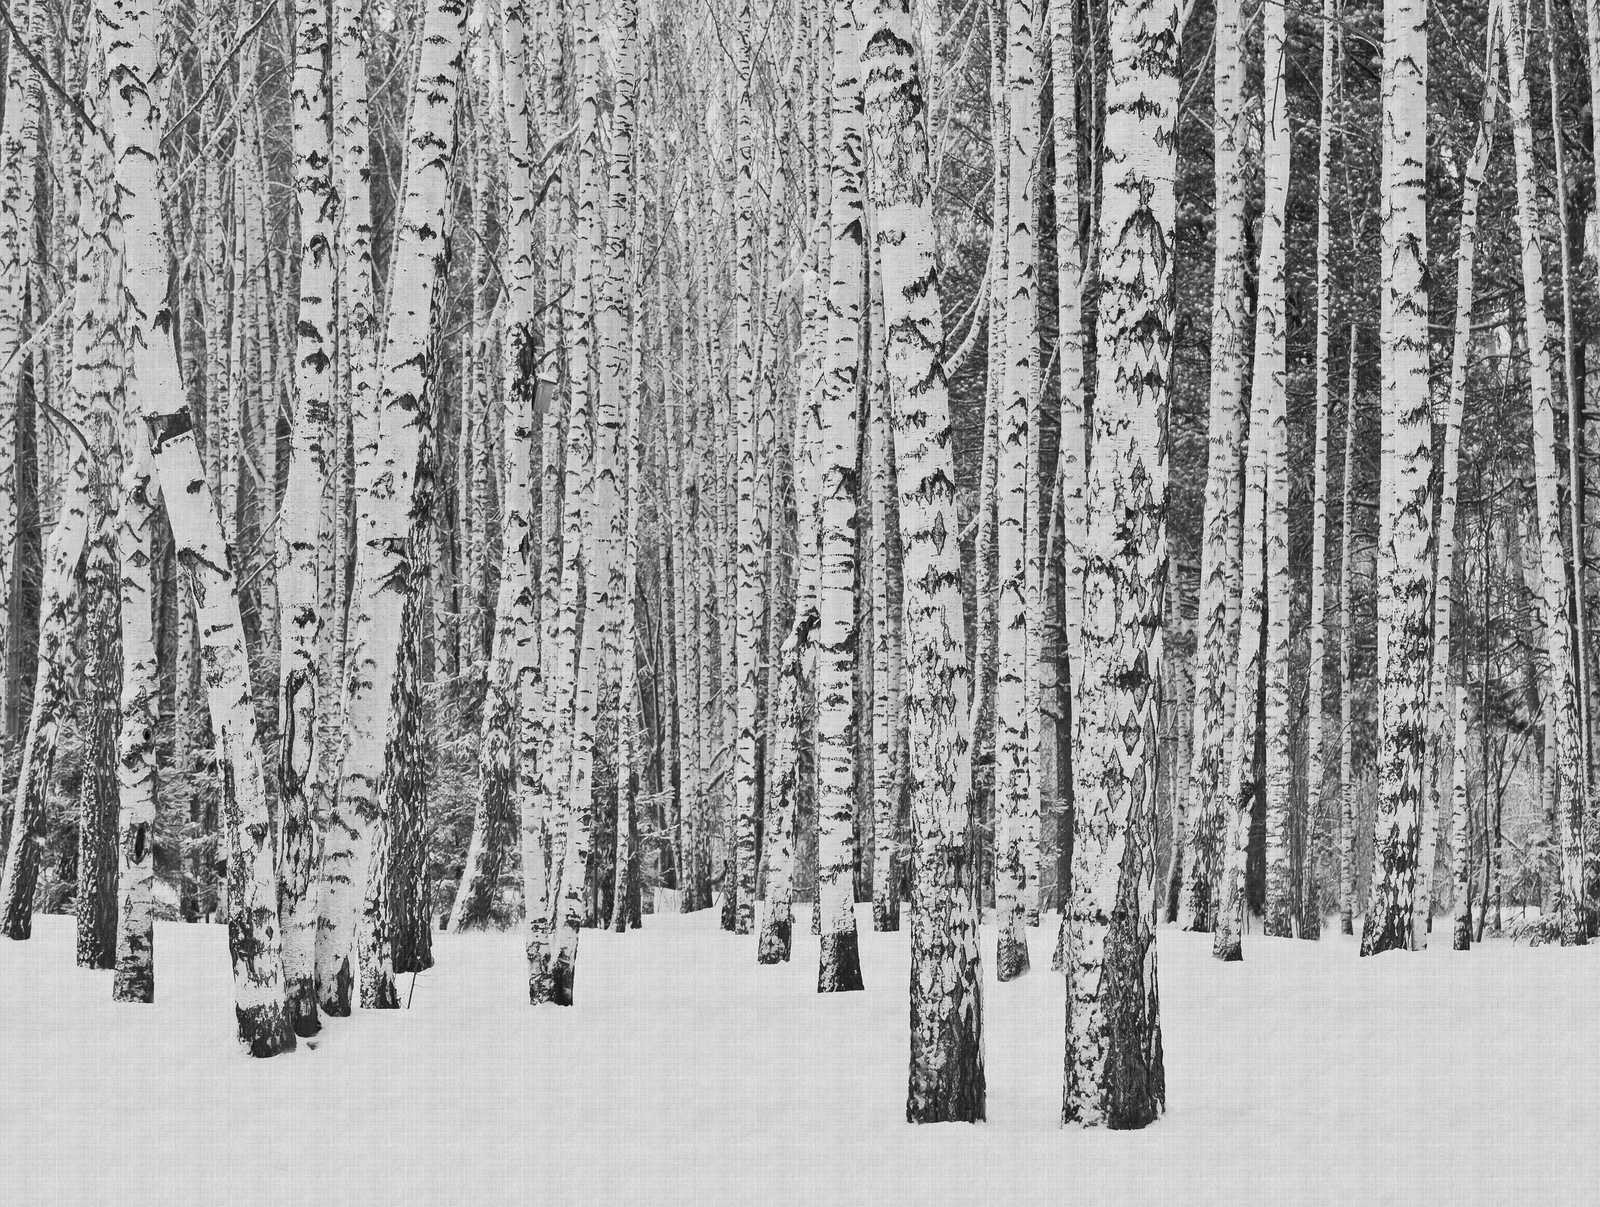             behang nieuwigheid | motief behang berkenbos in de sneeuw, zwart en wit
        